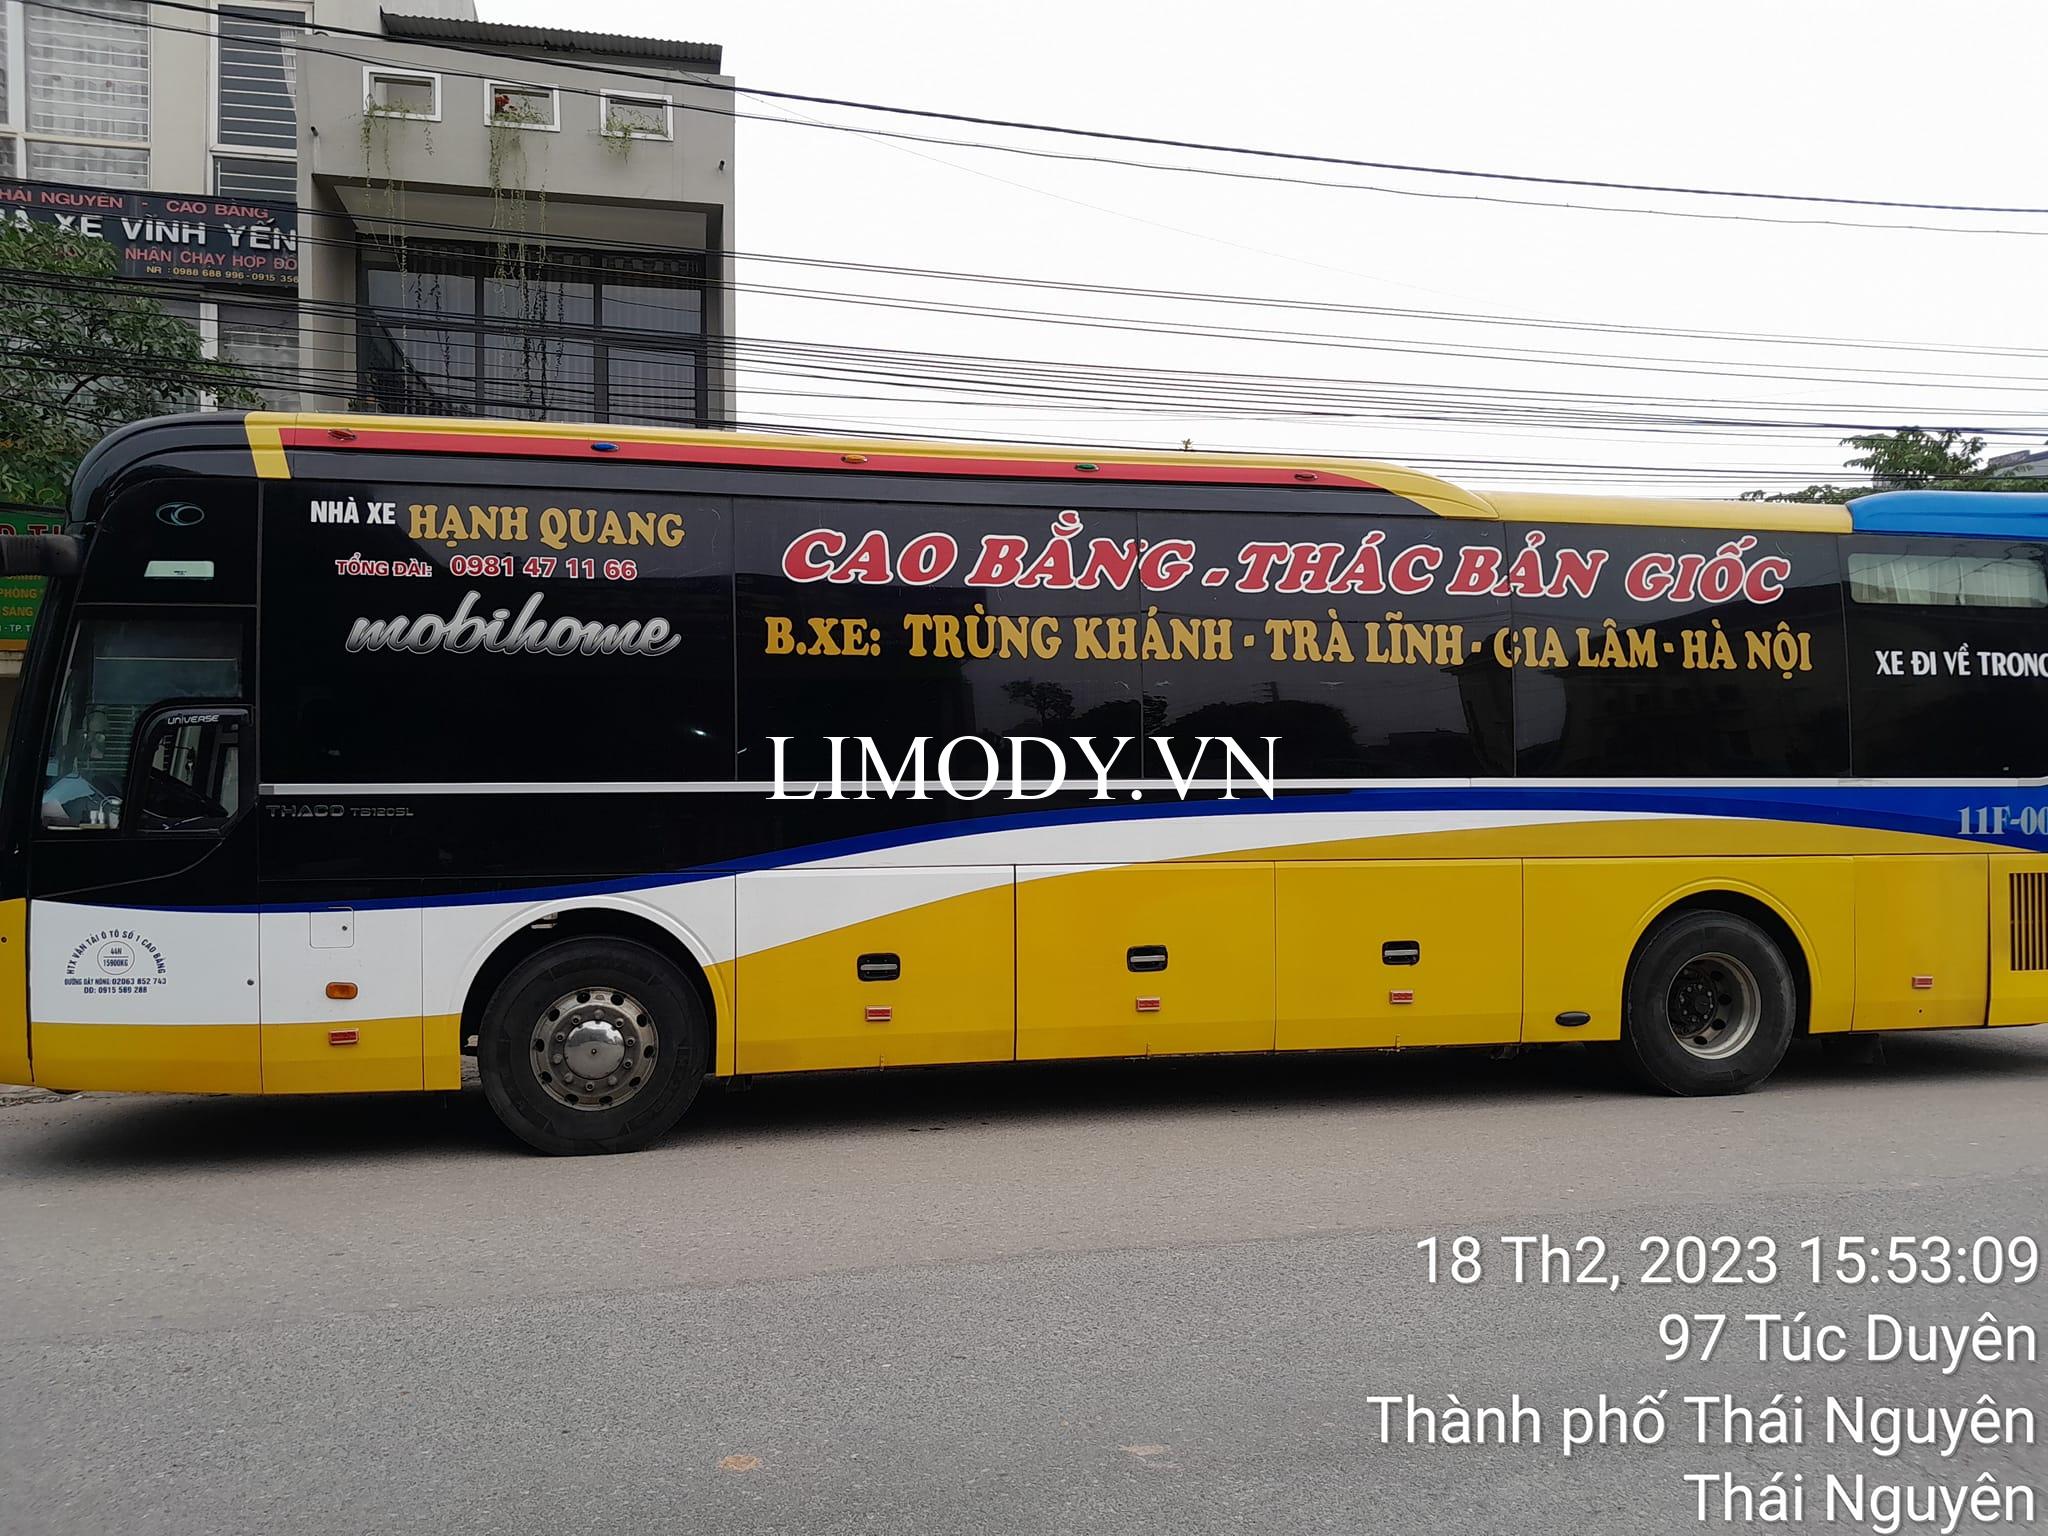 2 Nhà xe khách Hà Nội đi Phú Lương Thái Nguyên chất lượng cao